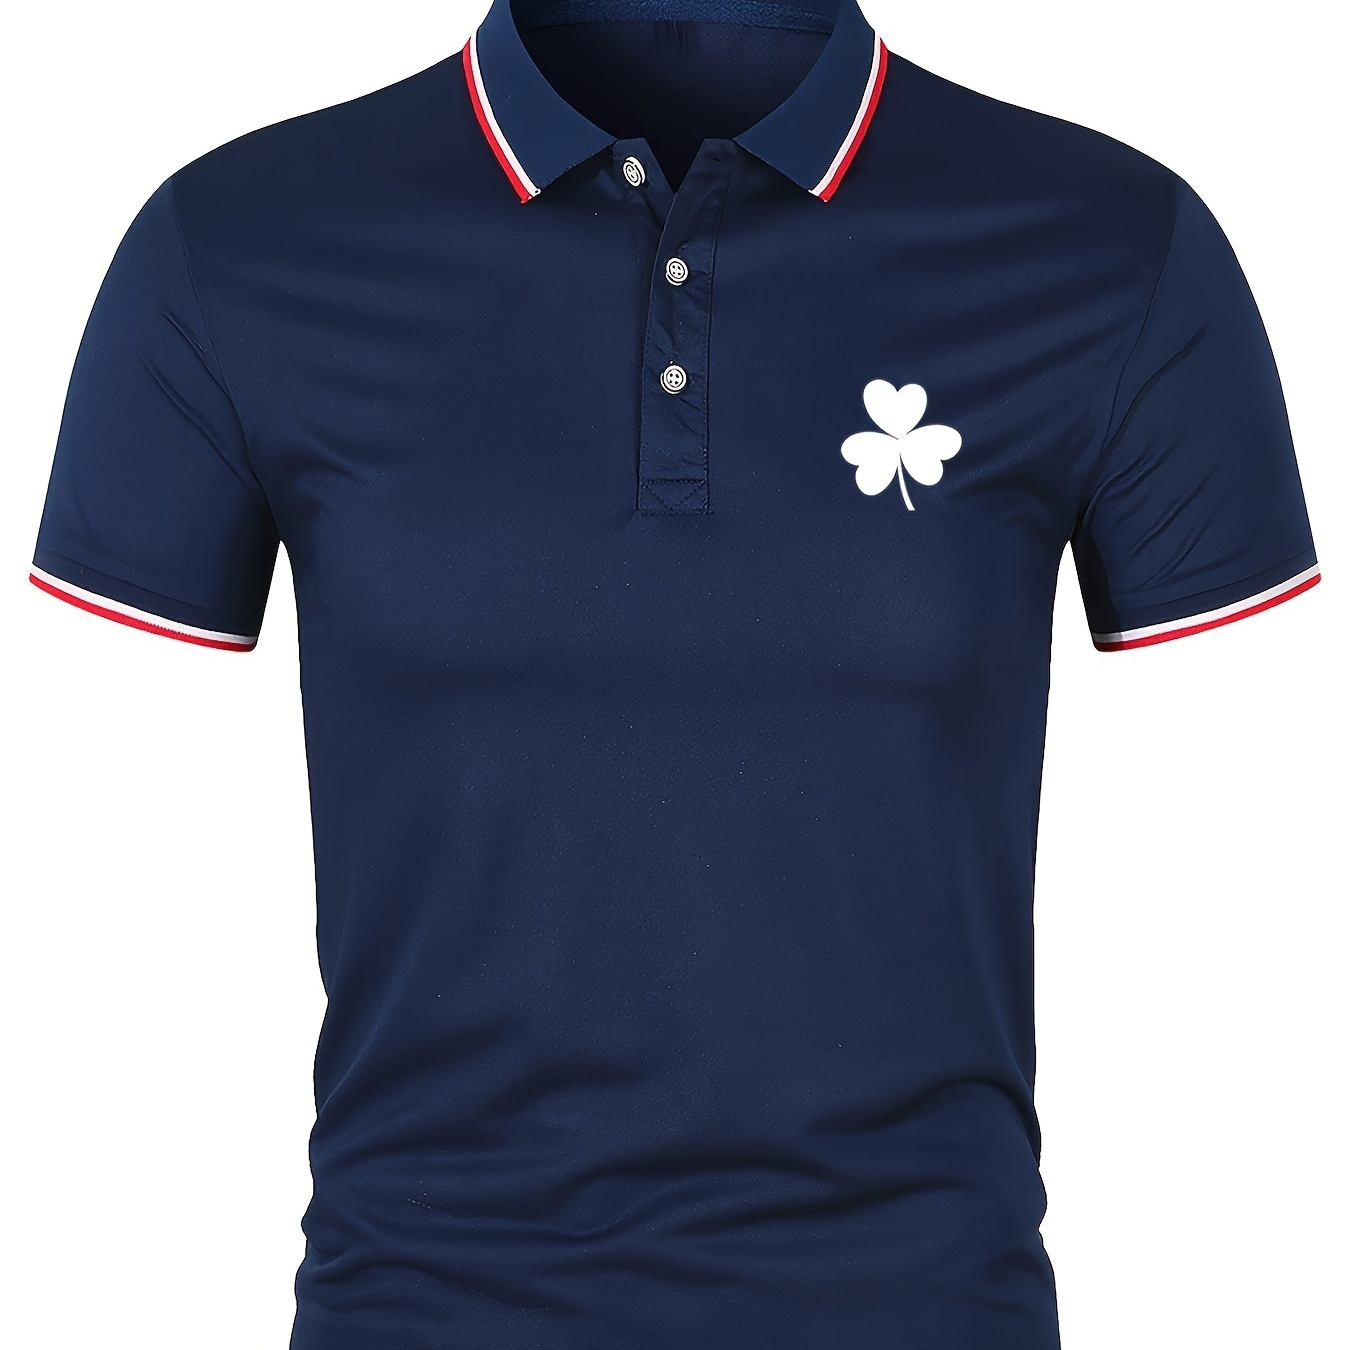 

Men's Golf Shirt, Clover Print Short Sleeve Breathable Tennis Shirt, Business Casual, Moisture Wicking